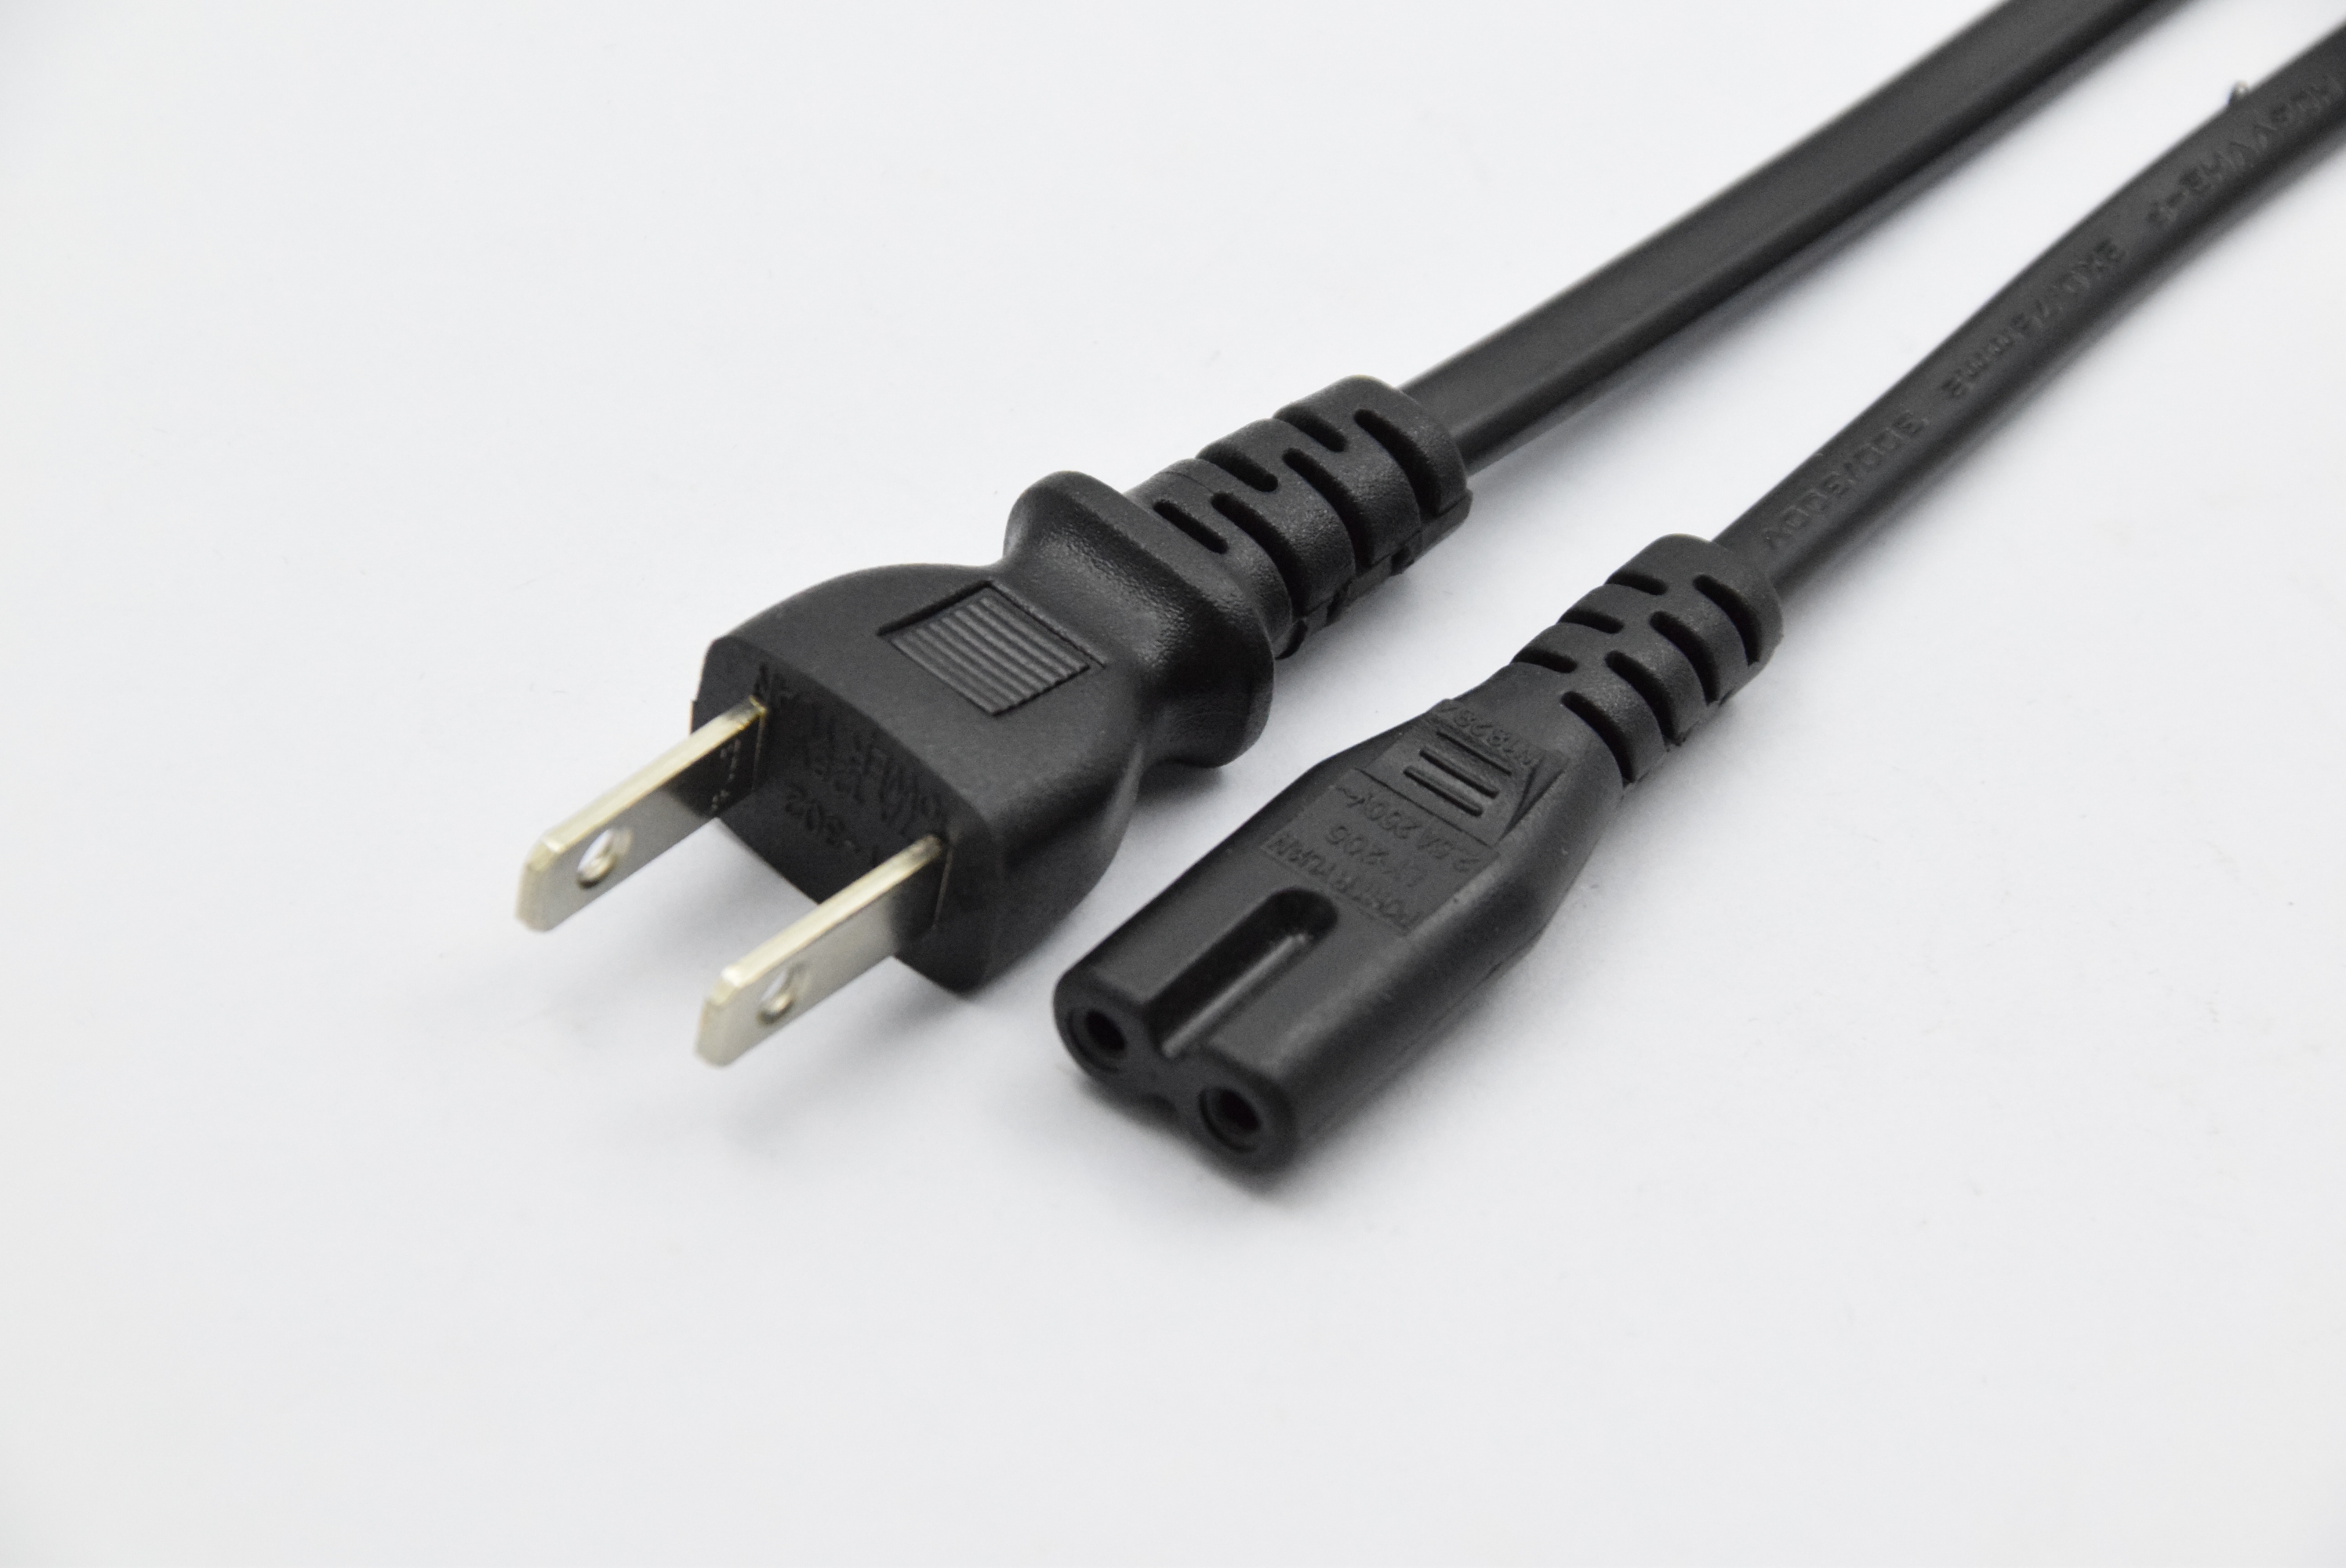 Japan Power Cords PSE JET Power Cord NY-PSE01 IEC C7